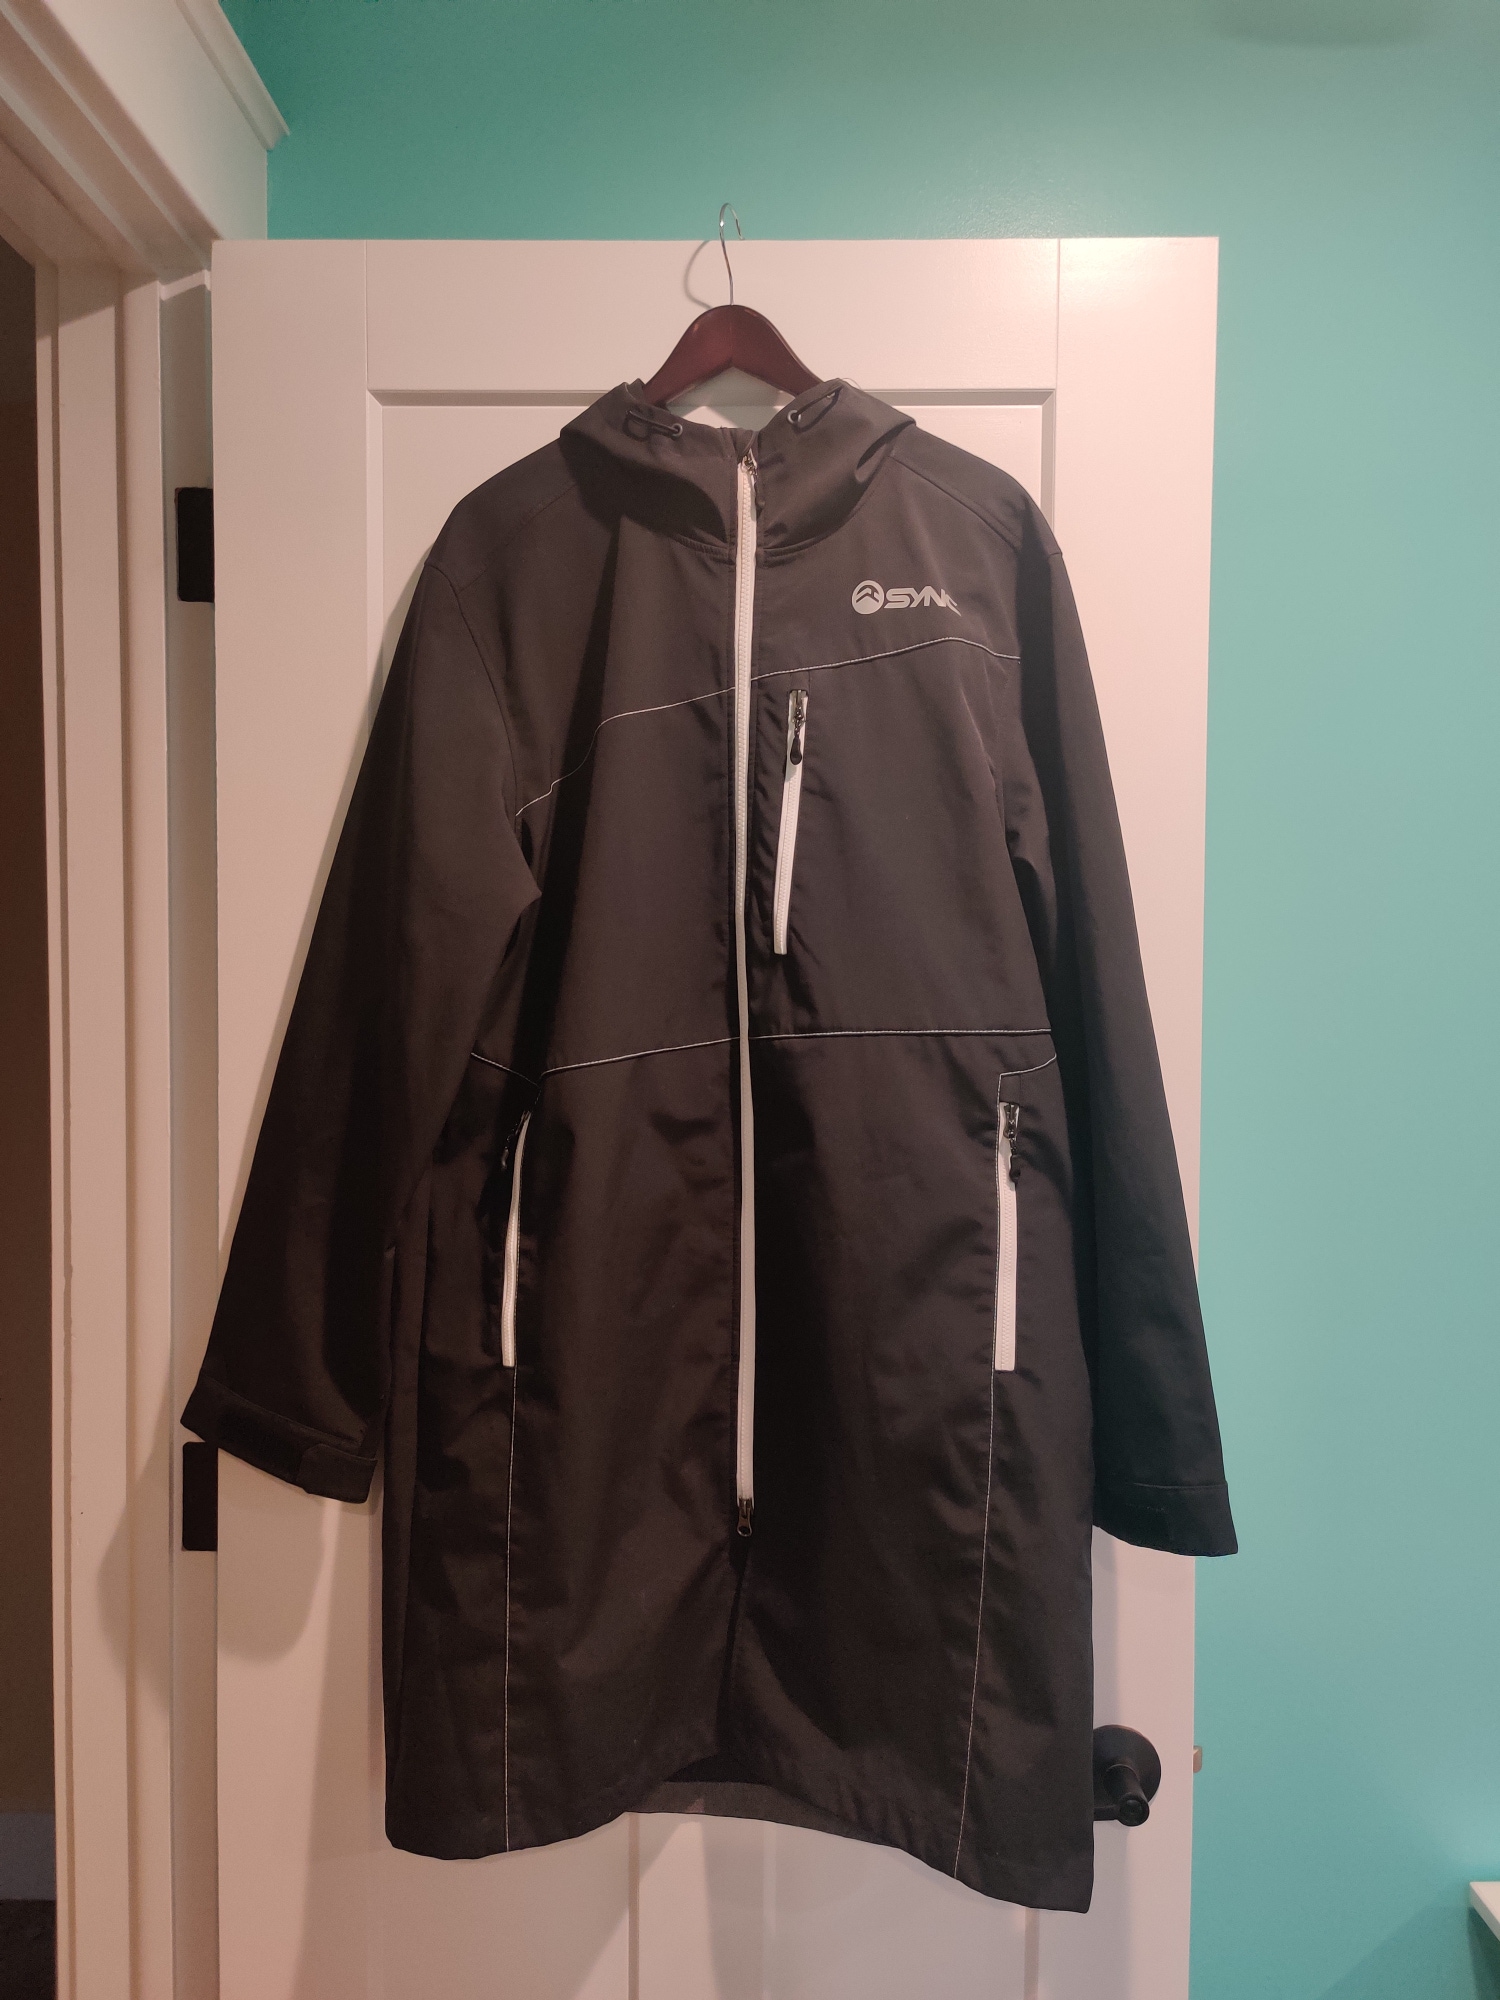 Black Unisex Adult Used (like NEW) Large SYNC Start House Jacket